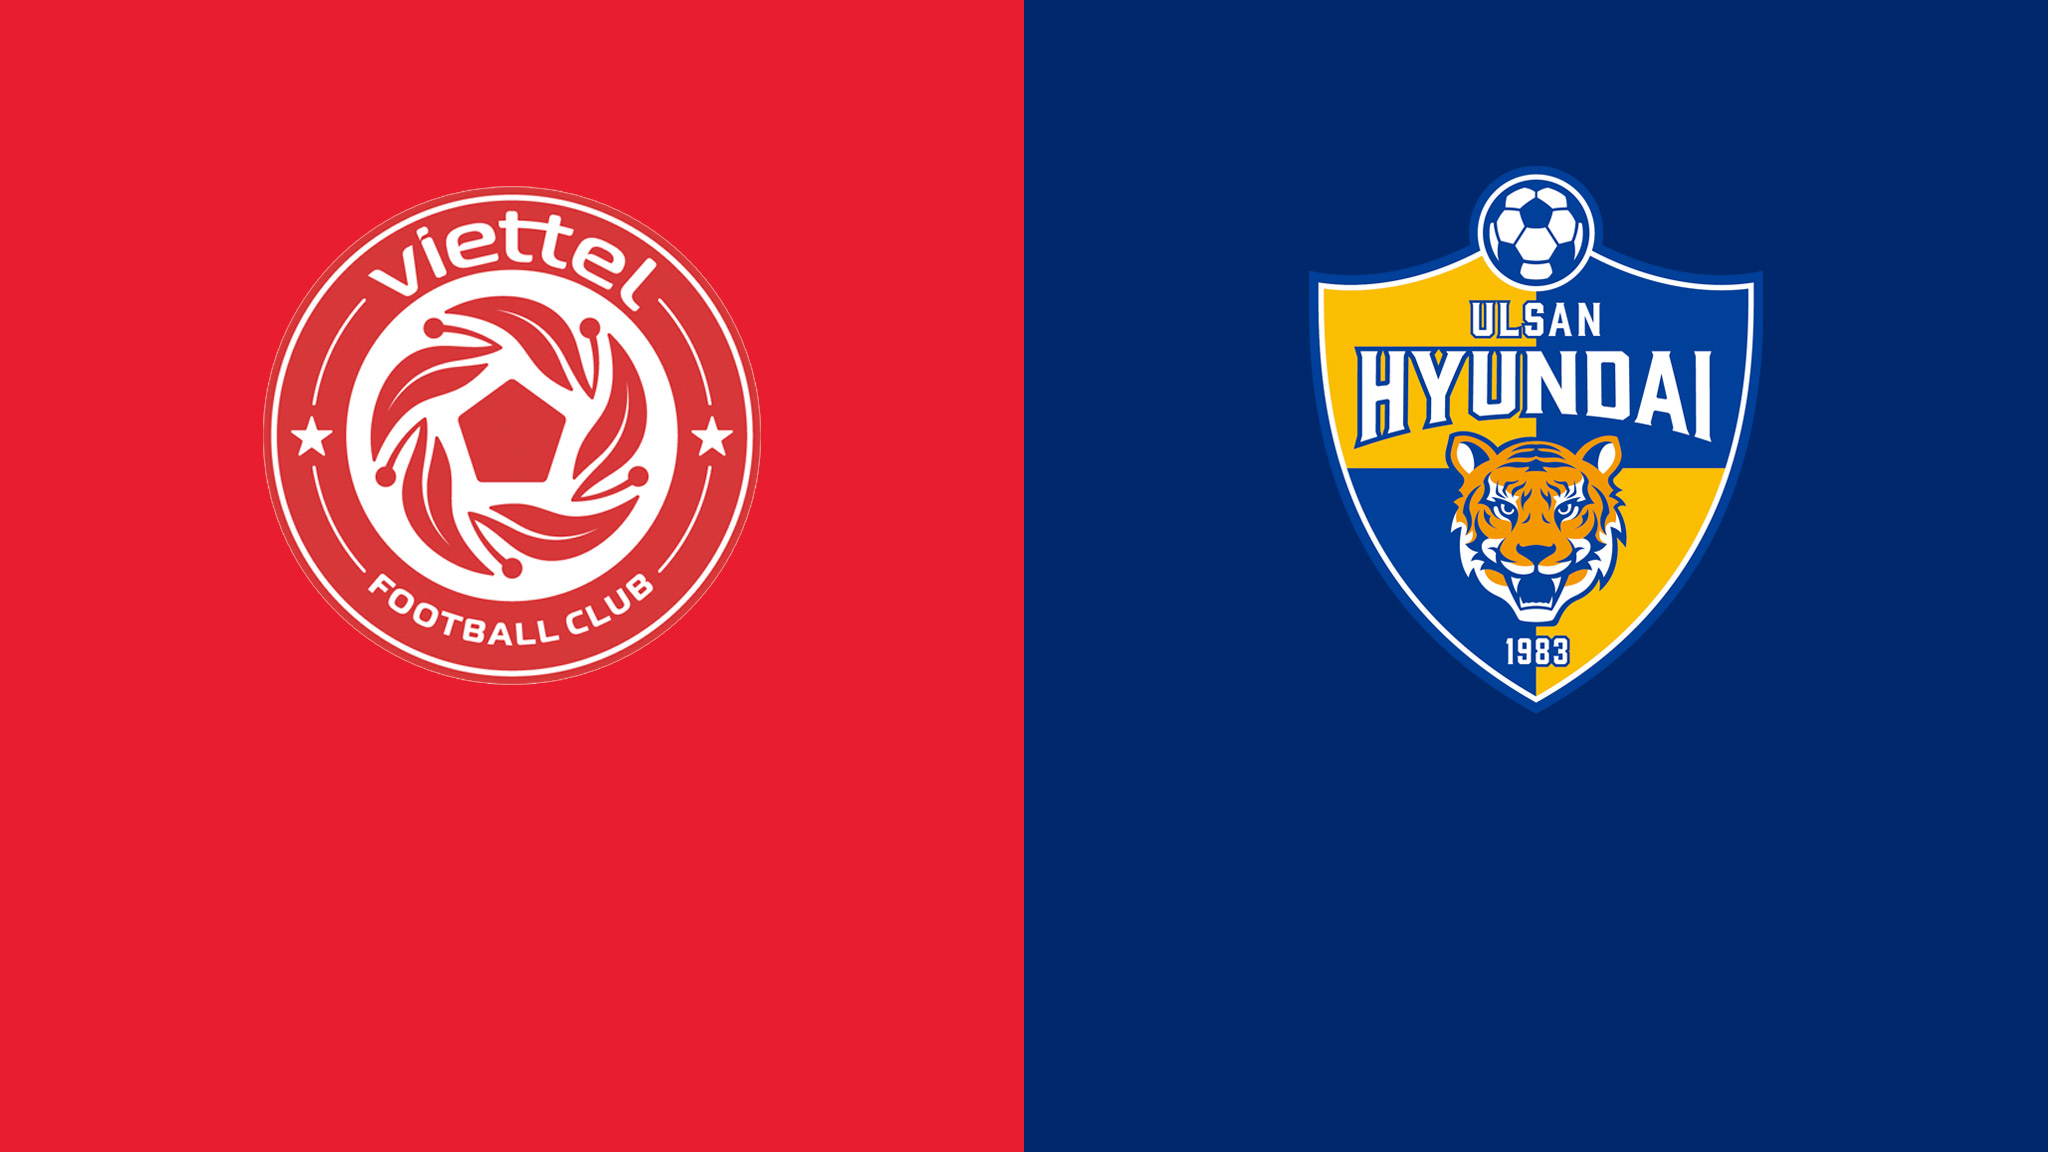 Xem trực tiếp bóng đá Viettel vs Ulsan Hyundai 21h00 ngày 26/6 - Champions League châu Á ở đâu?